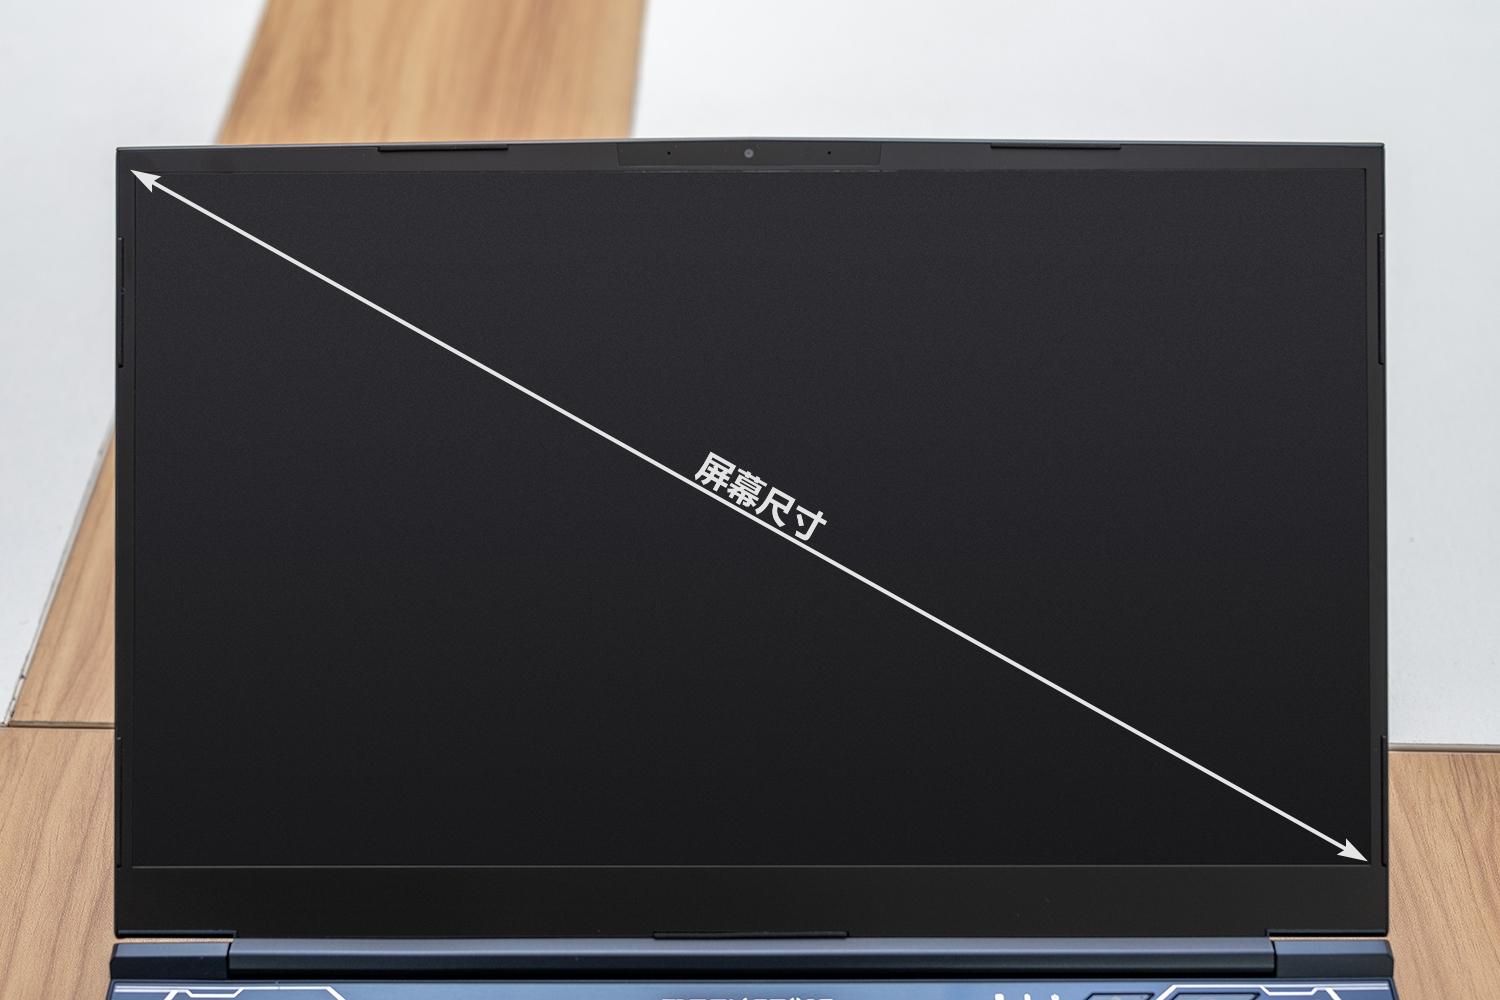 全新金属超薄笔记本超级本11.6寸 刀锋版-阿里巴巴